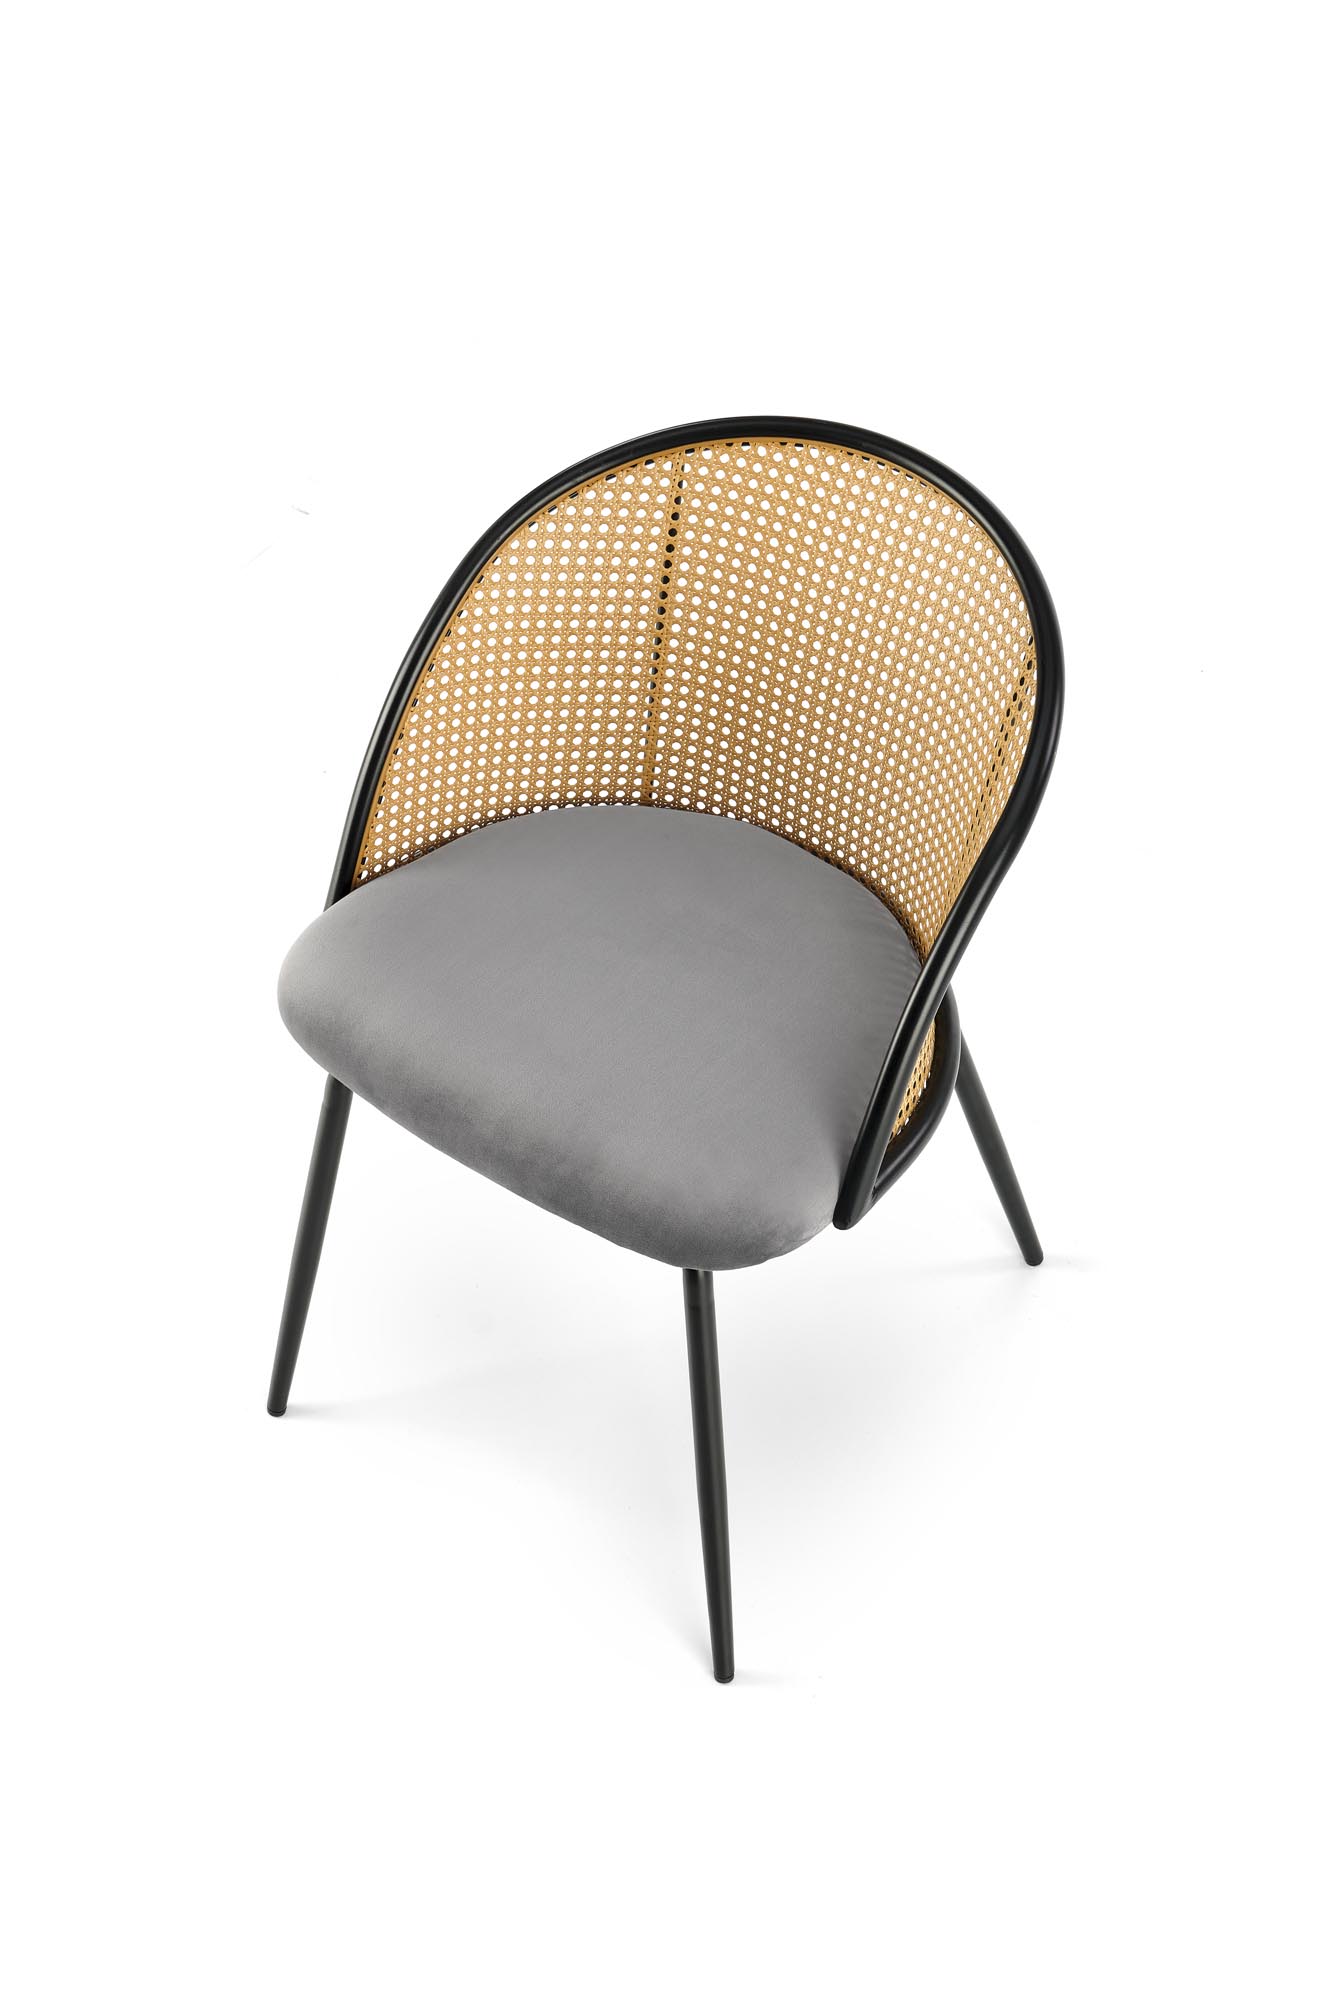 K508 Židle Popelový Židle s čalouněným sedákem k508 - Popelový